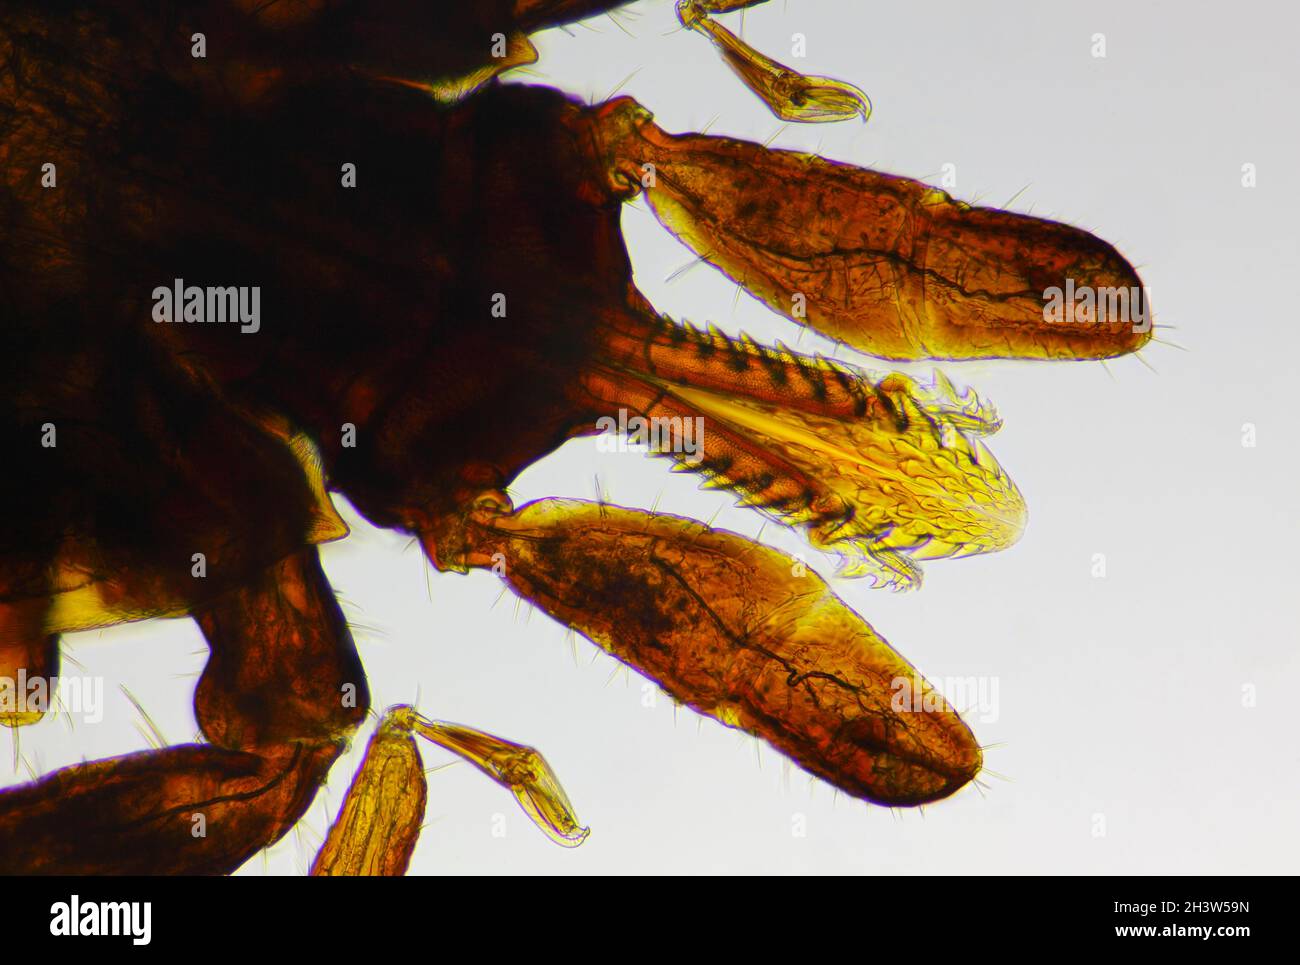 Mikroskopische Ansicht einer Zecke (Ixodidae, harte Zecke) Kopf und Mund. Hellfeldbeleuchtung. Stockfoto